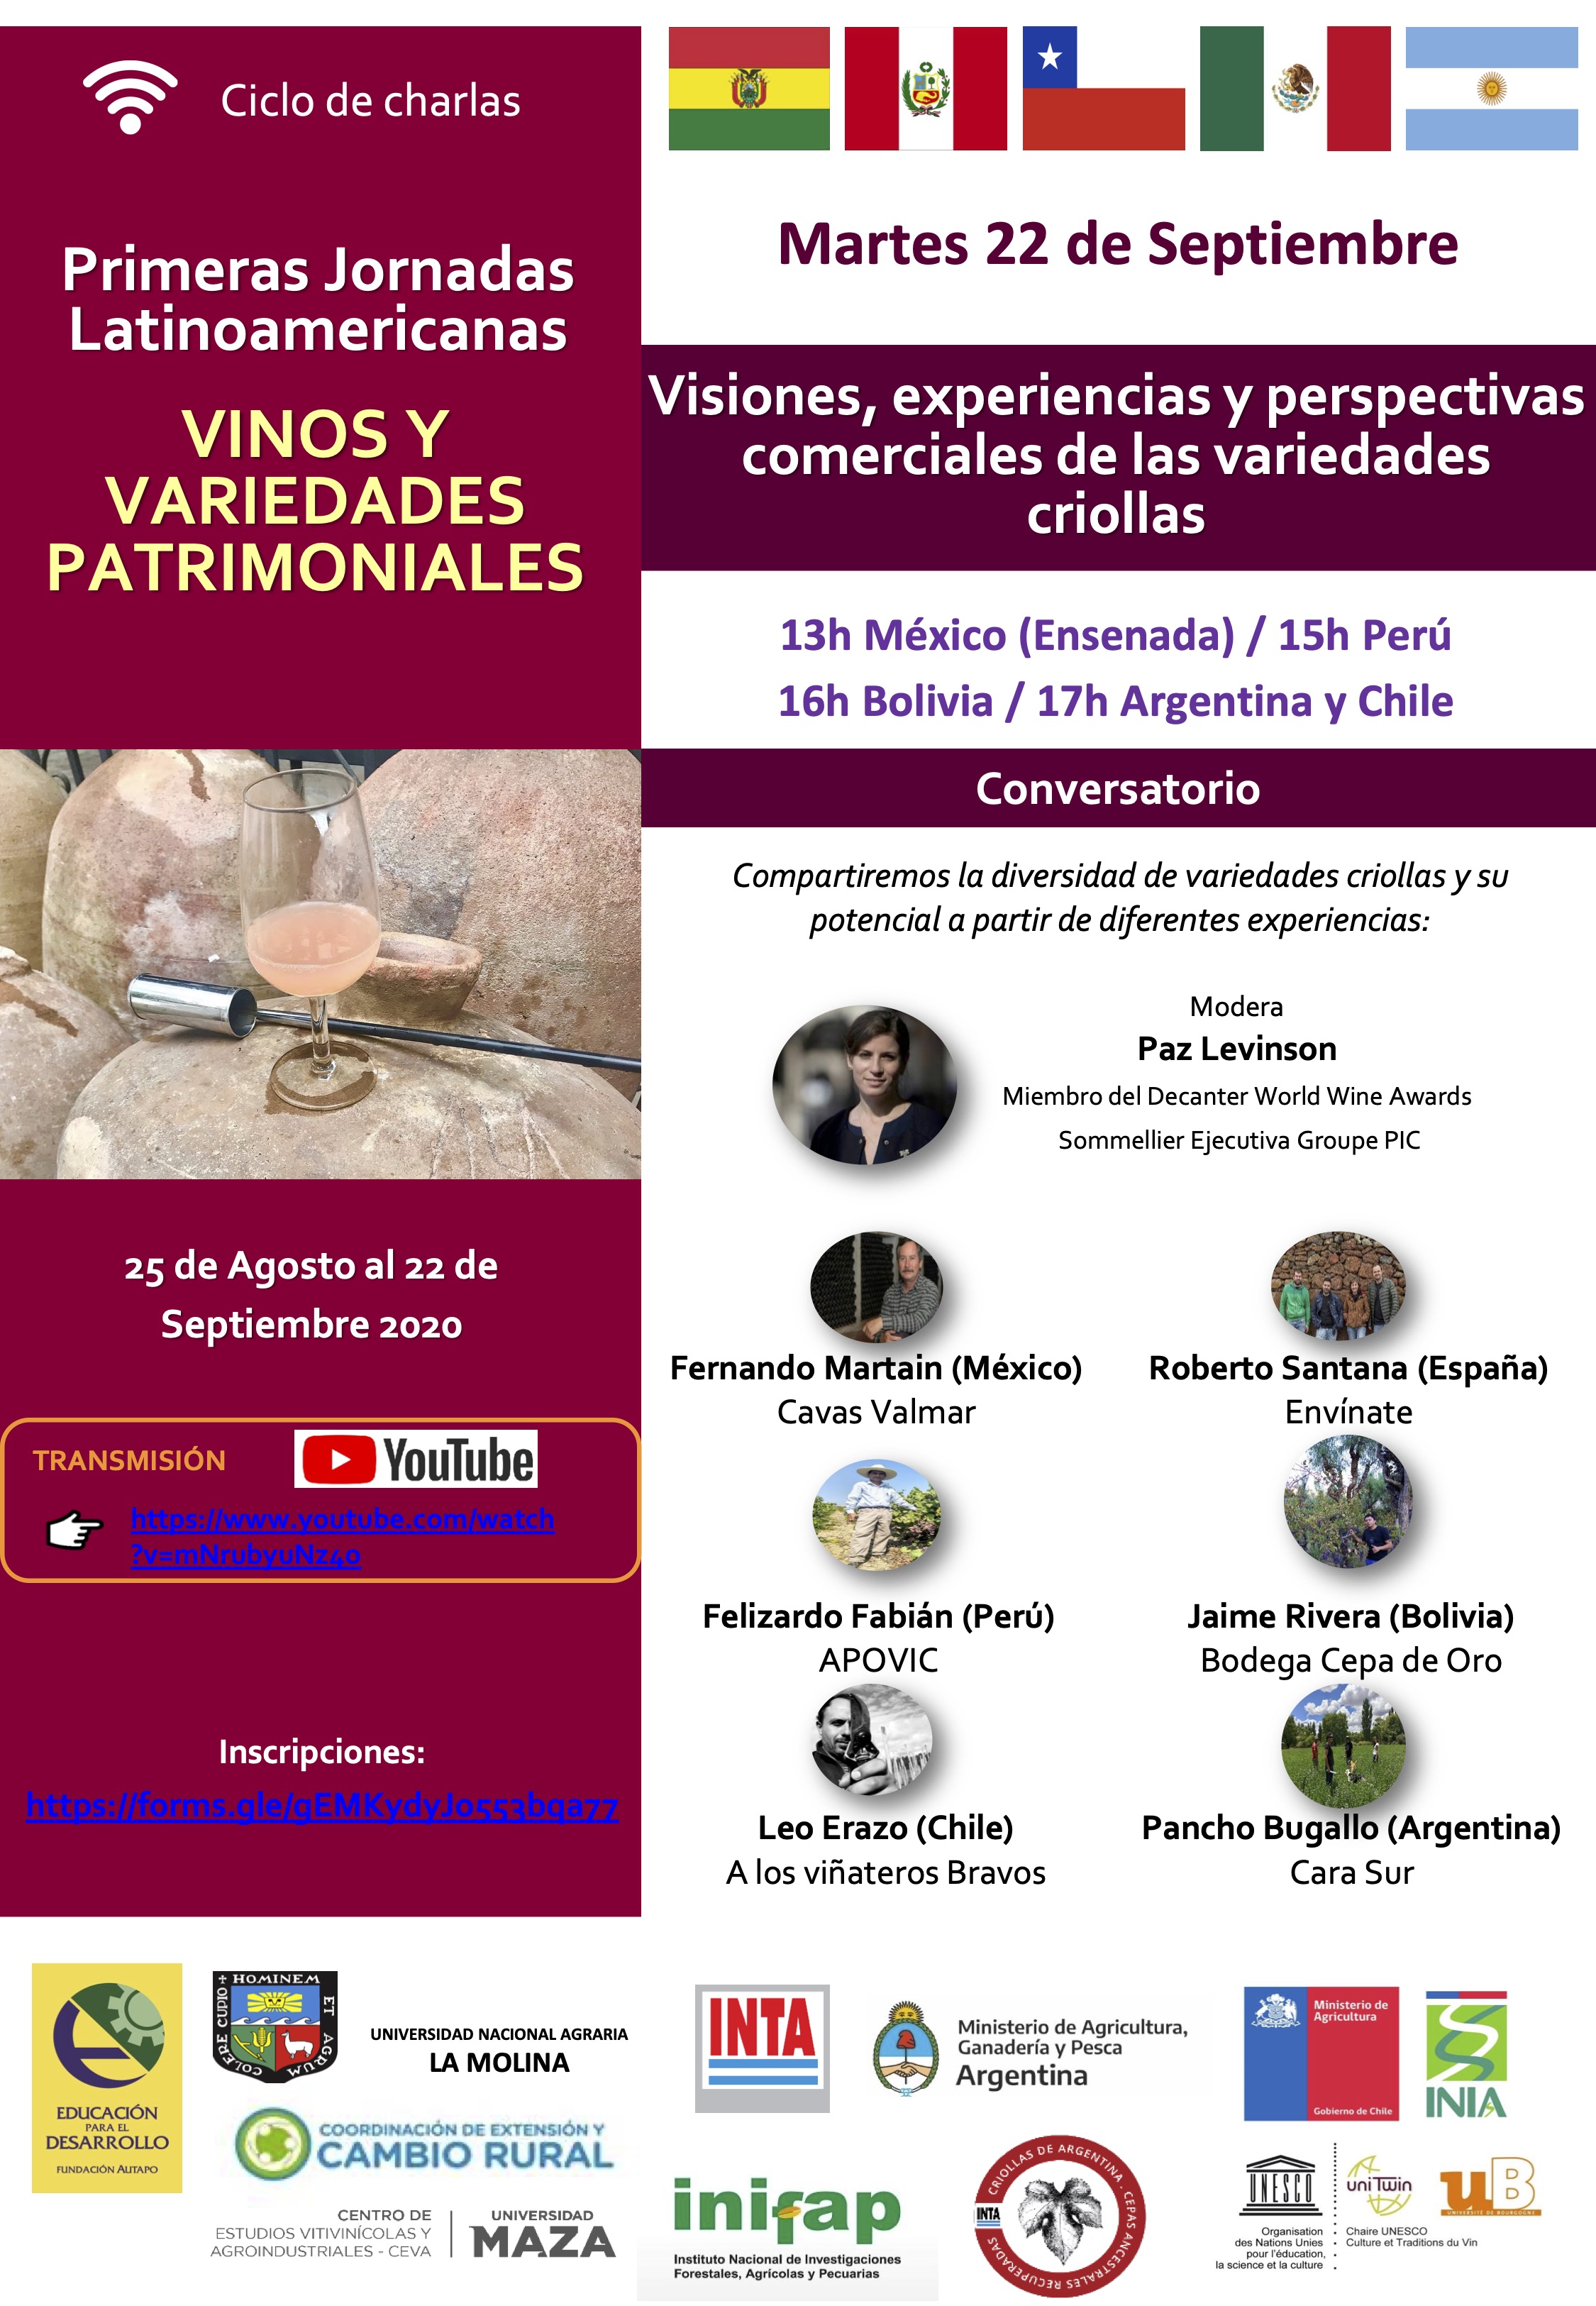 /cms/uploads/image/file/605654/Conversatorio_Experiencias_y_perspectivas_comerciales_de_variedades_criollas_INIFAP_2020.jpg